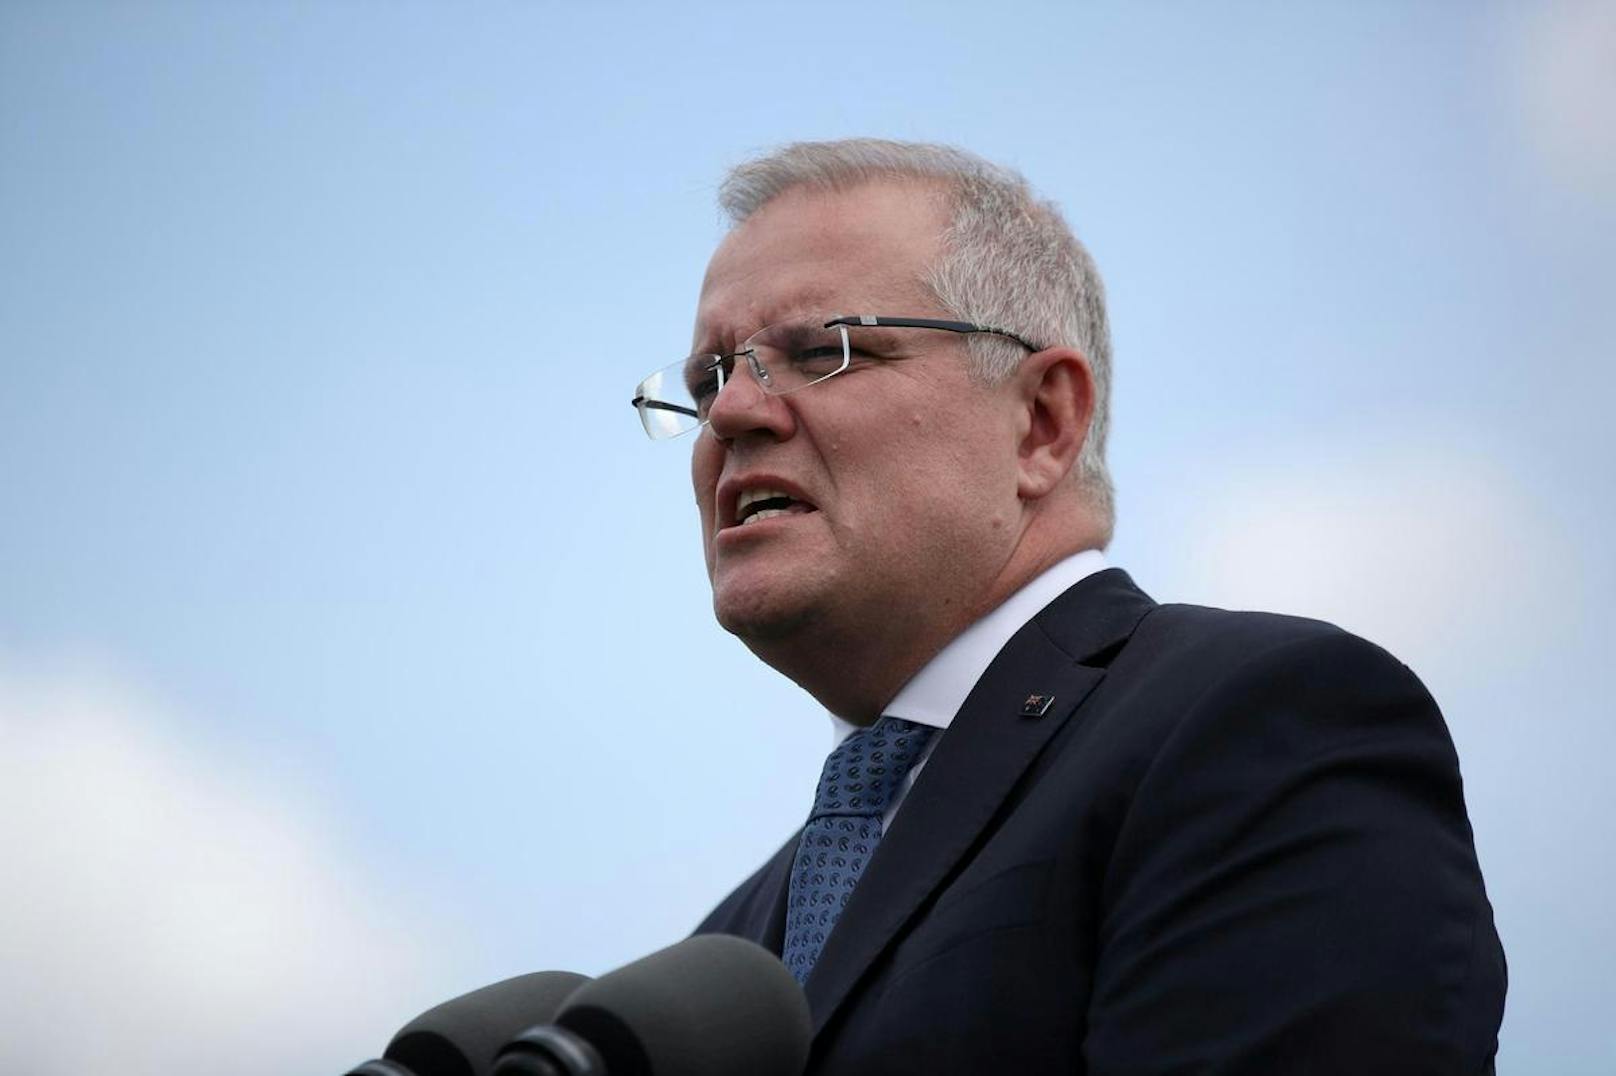 Australiens Premierminister Scott Morrison bezeichnete den Vorfall als "entsetzlich und inakzeptabel". Die Regierung in Katar versprach eine "umfassende, transparente Untersuchung" des Vorfalls, deren Ergebnisse auch "internationalen Partnern" vorgelegt würden.